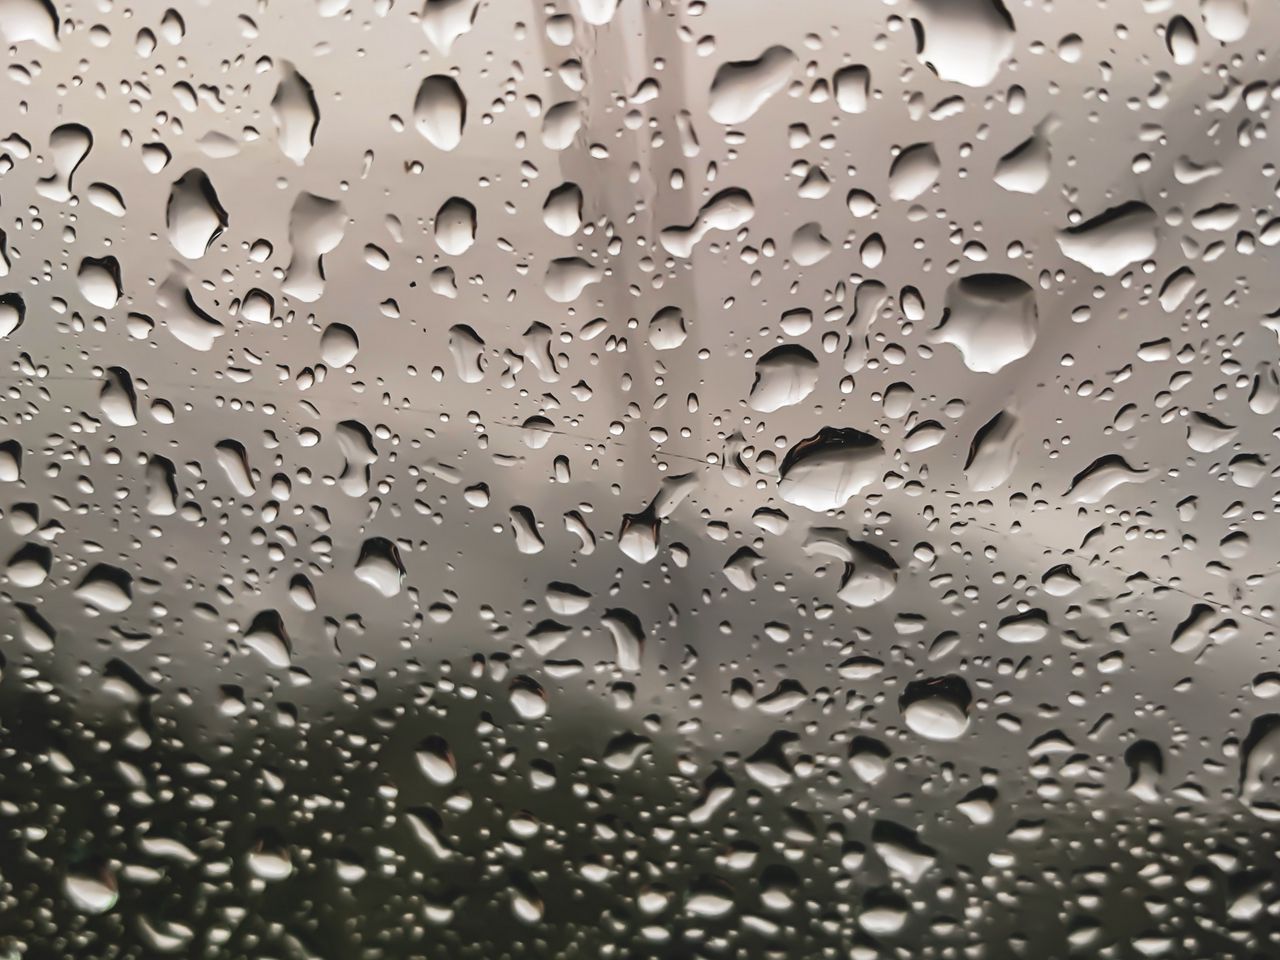 Капли дождя в воздухе. Капли дождя. Капли на стекле. Стекло с каплями дождя. Дождевые капли на стекле.